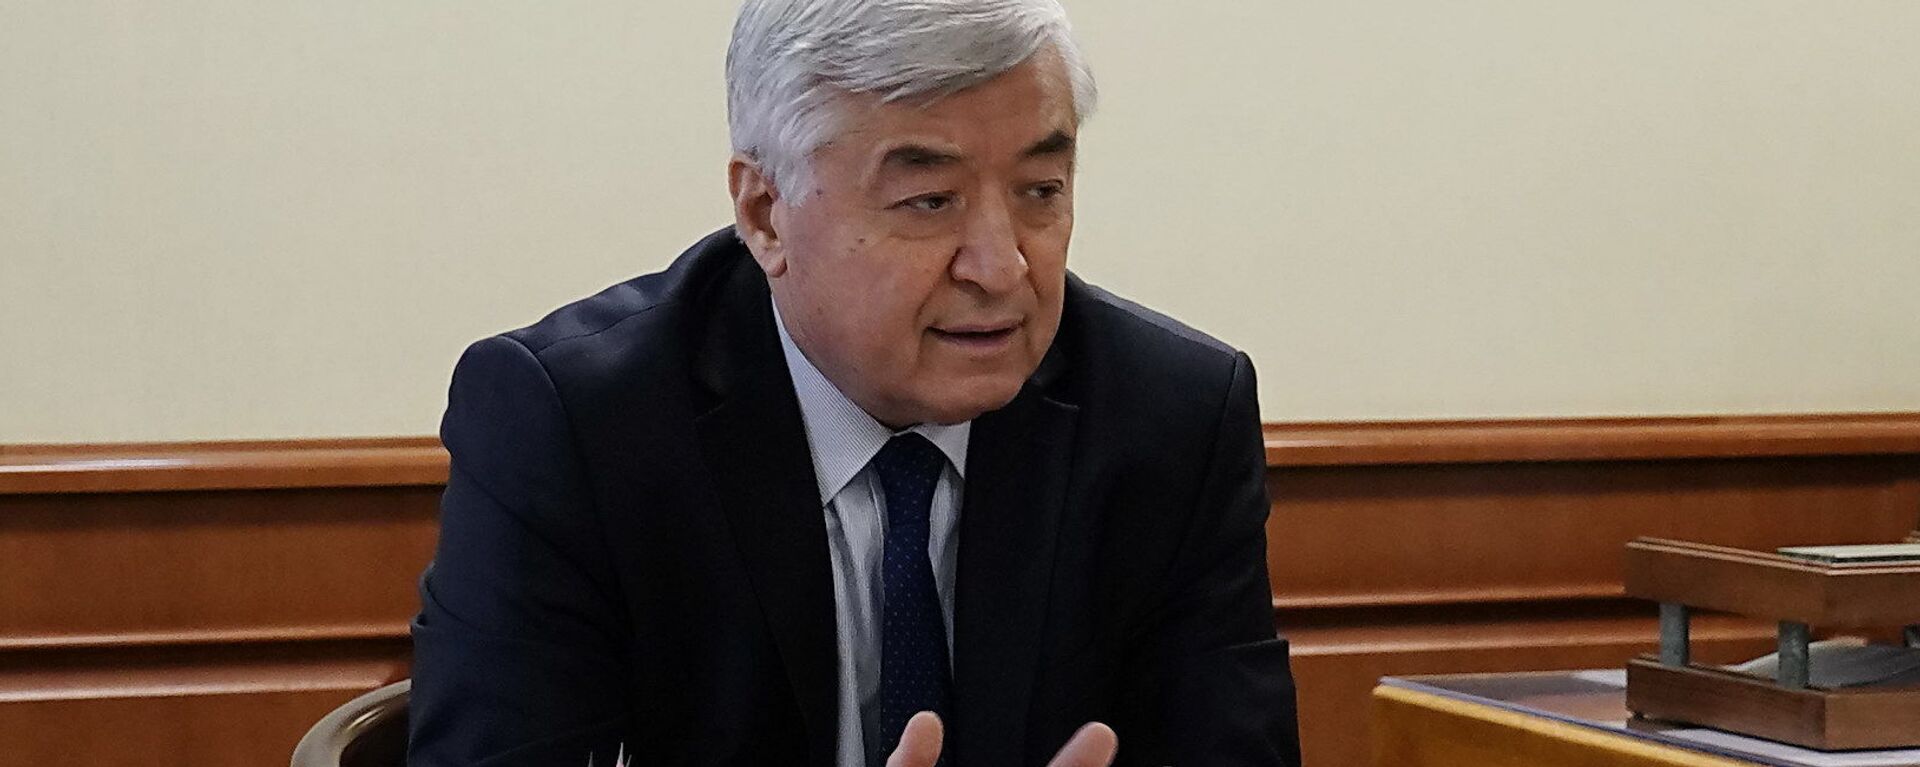 Министр здравоохранения РУз Абдухаким Хаджибаев - Sputnik Узбекистан, 1920, 28.05.2021